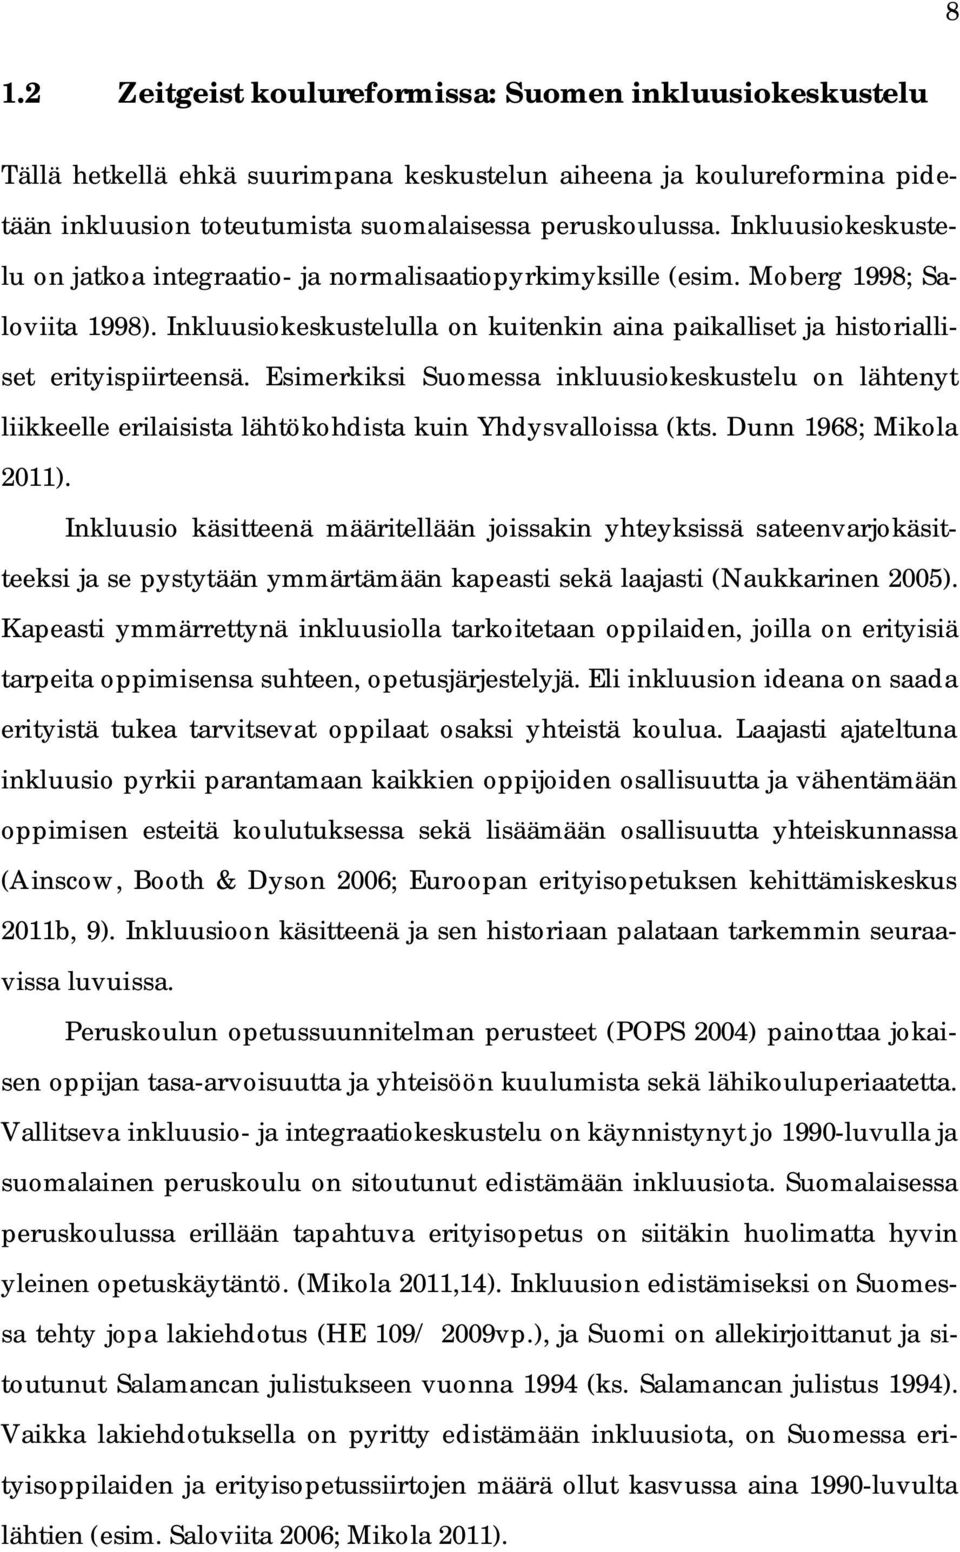 Esimerkiksi Suomessa inkluusiokeskustelu on lähtenyt liikkeelle erilaisista lähtökohdista kuin Yhdysvalloissa (kts. Dunn 1968; Mikola 2011).